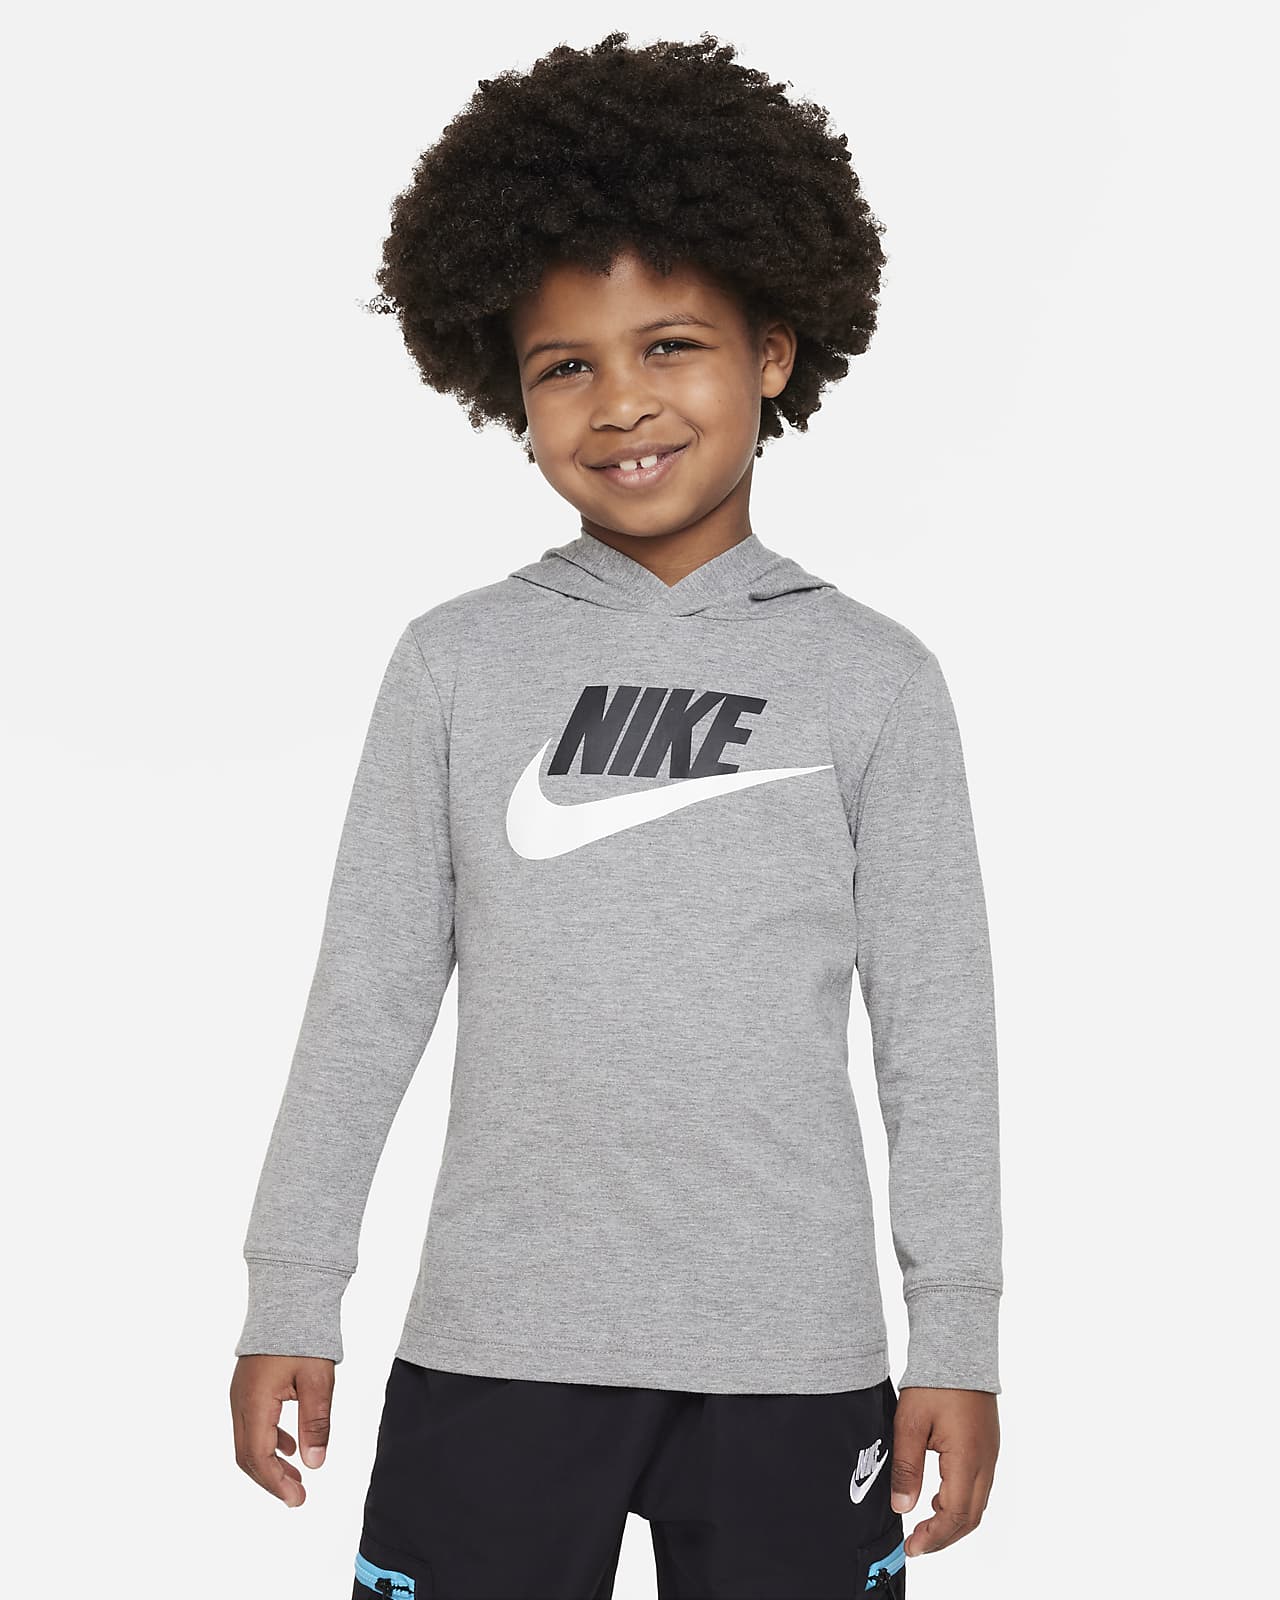 Long Nike Sleeve Sportswear Tee T-Shirt. Futura Kids\' Hooded Little